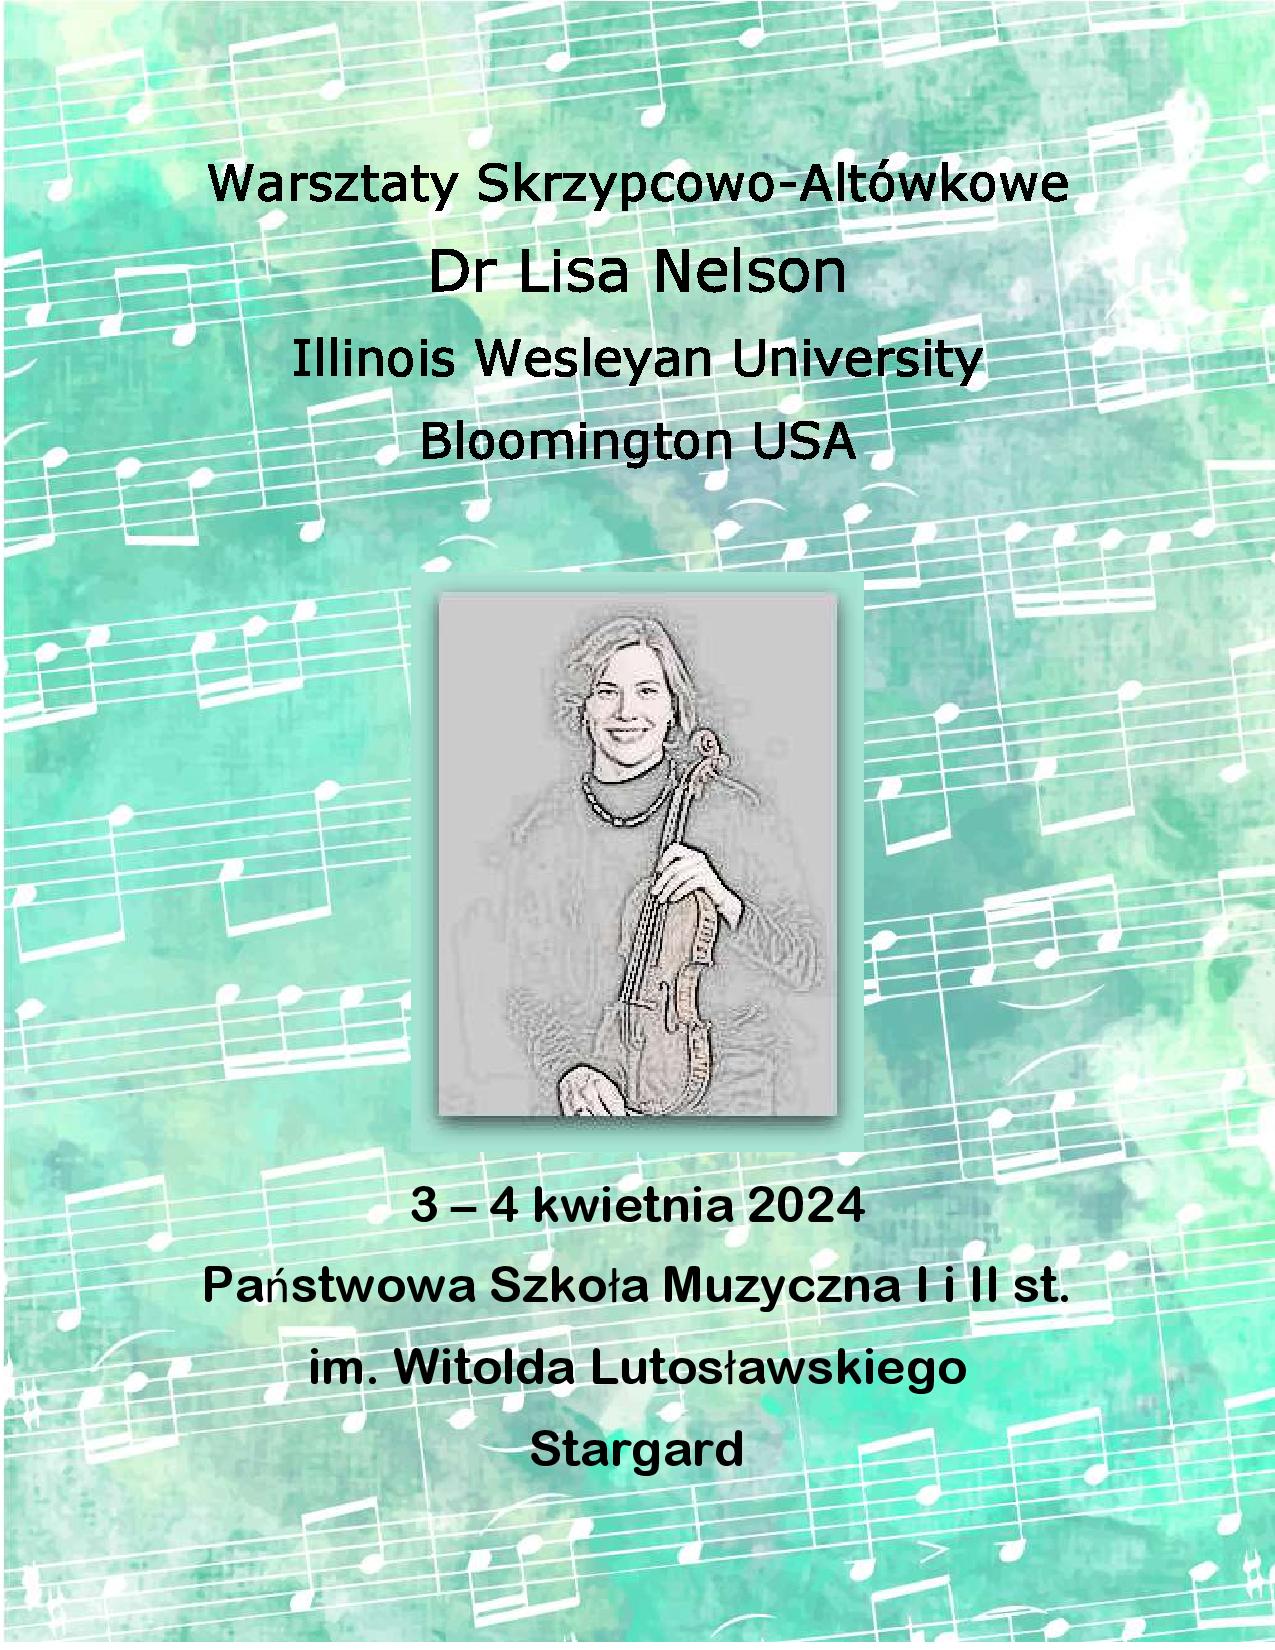 Plakat Warsztatów Skrzypcowo-Altówkowych z prof. Lisą Nelson w dniach 3 i 4 kwietnia 2024. Seledynowe tło plakatu ozdabiają białe pięciolinie z nutami. W środkowej części znajduje się negatyw zdjęcia pani Lisy Nelson trzymającej skrzypce.